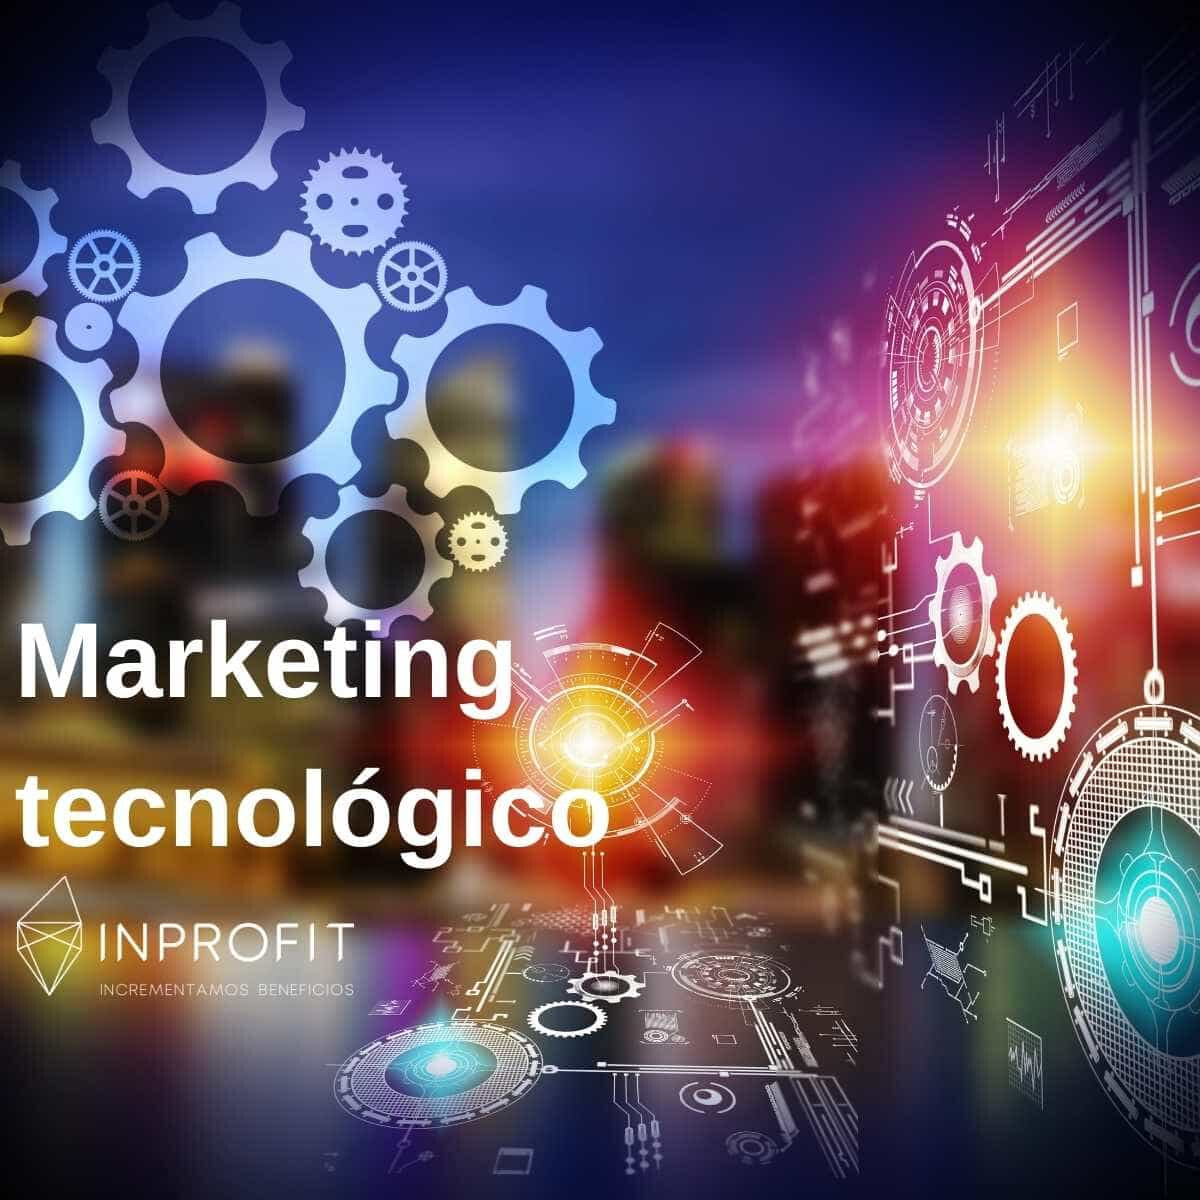 Marketing tecnológico: soluciones tecnológicas para el marketing